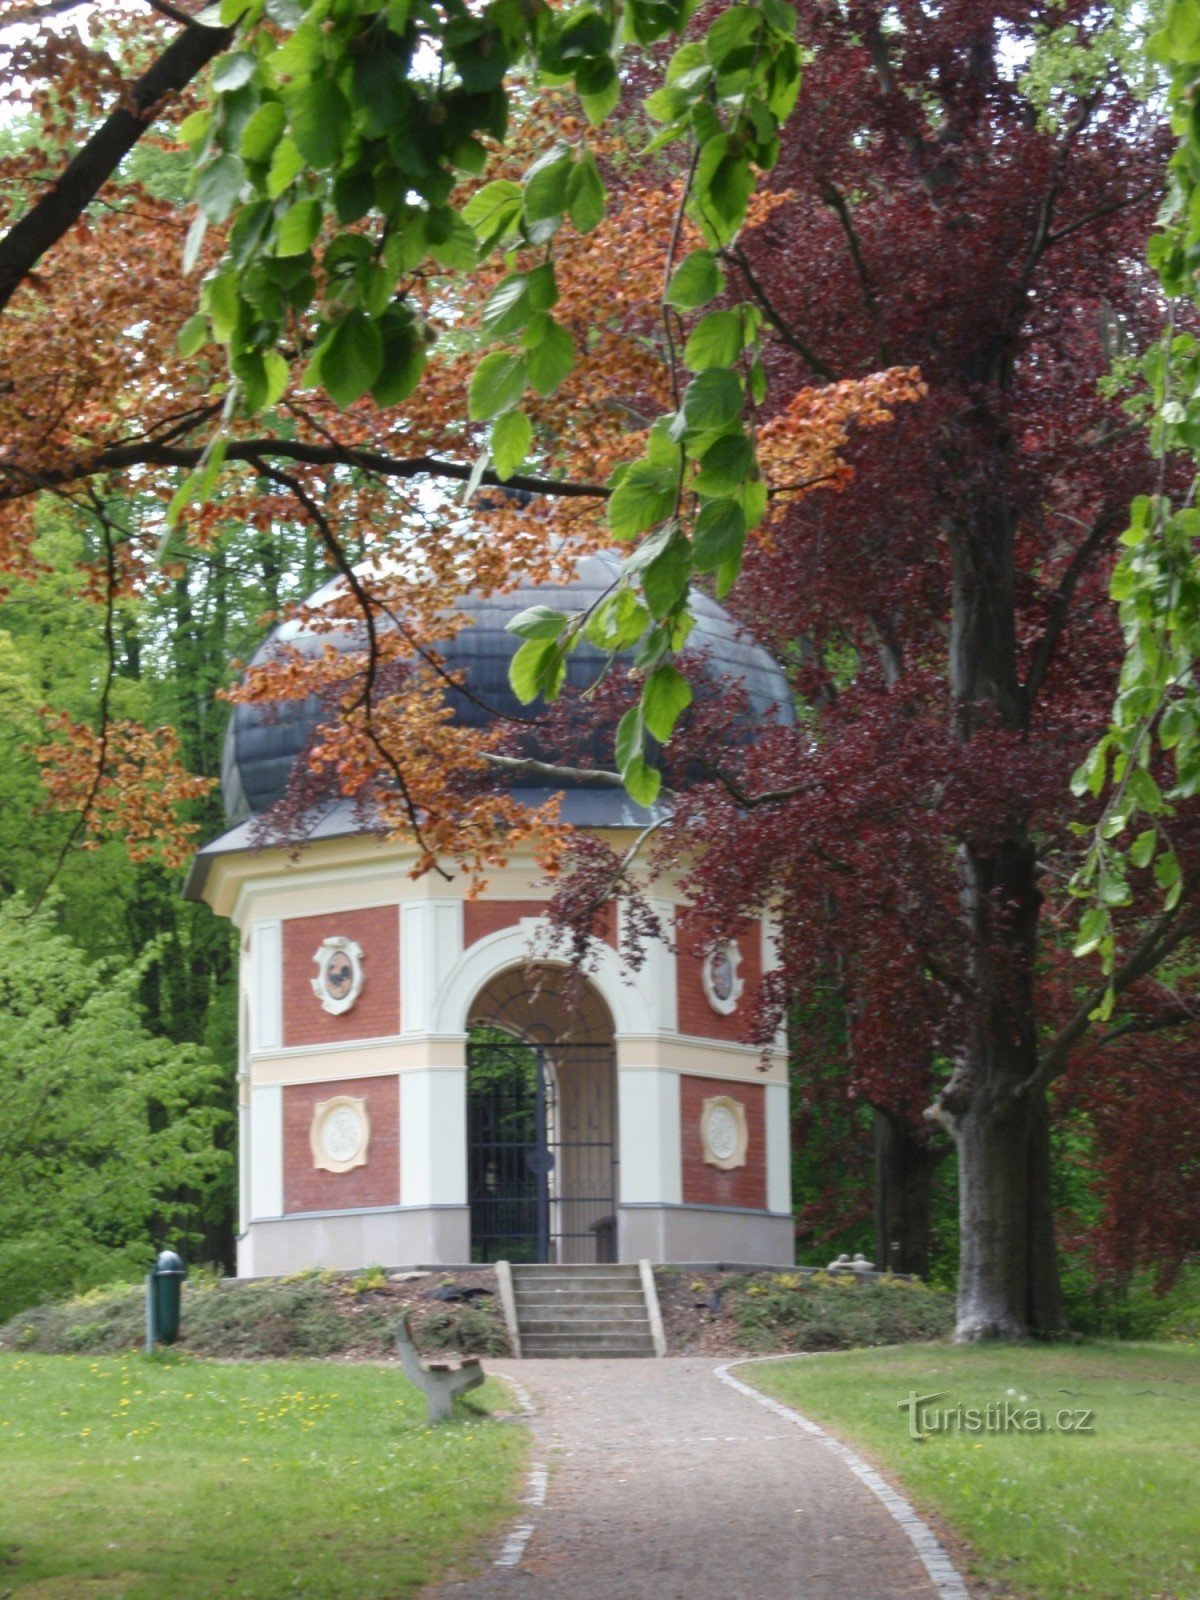 Javorka Park in Česká Třebová